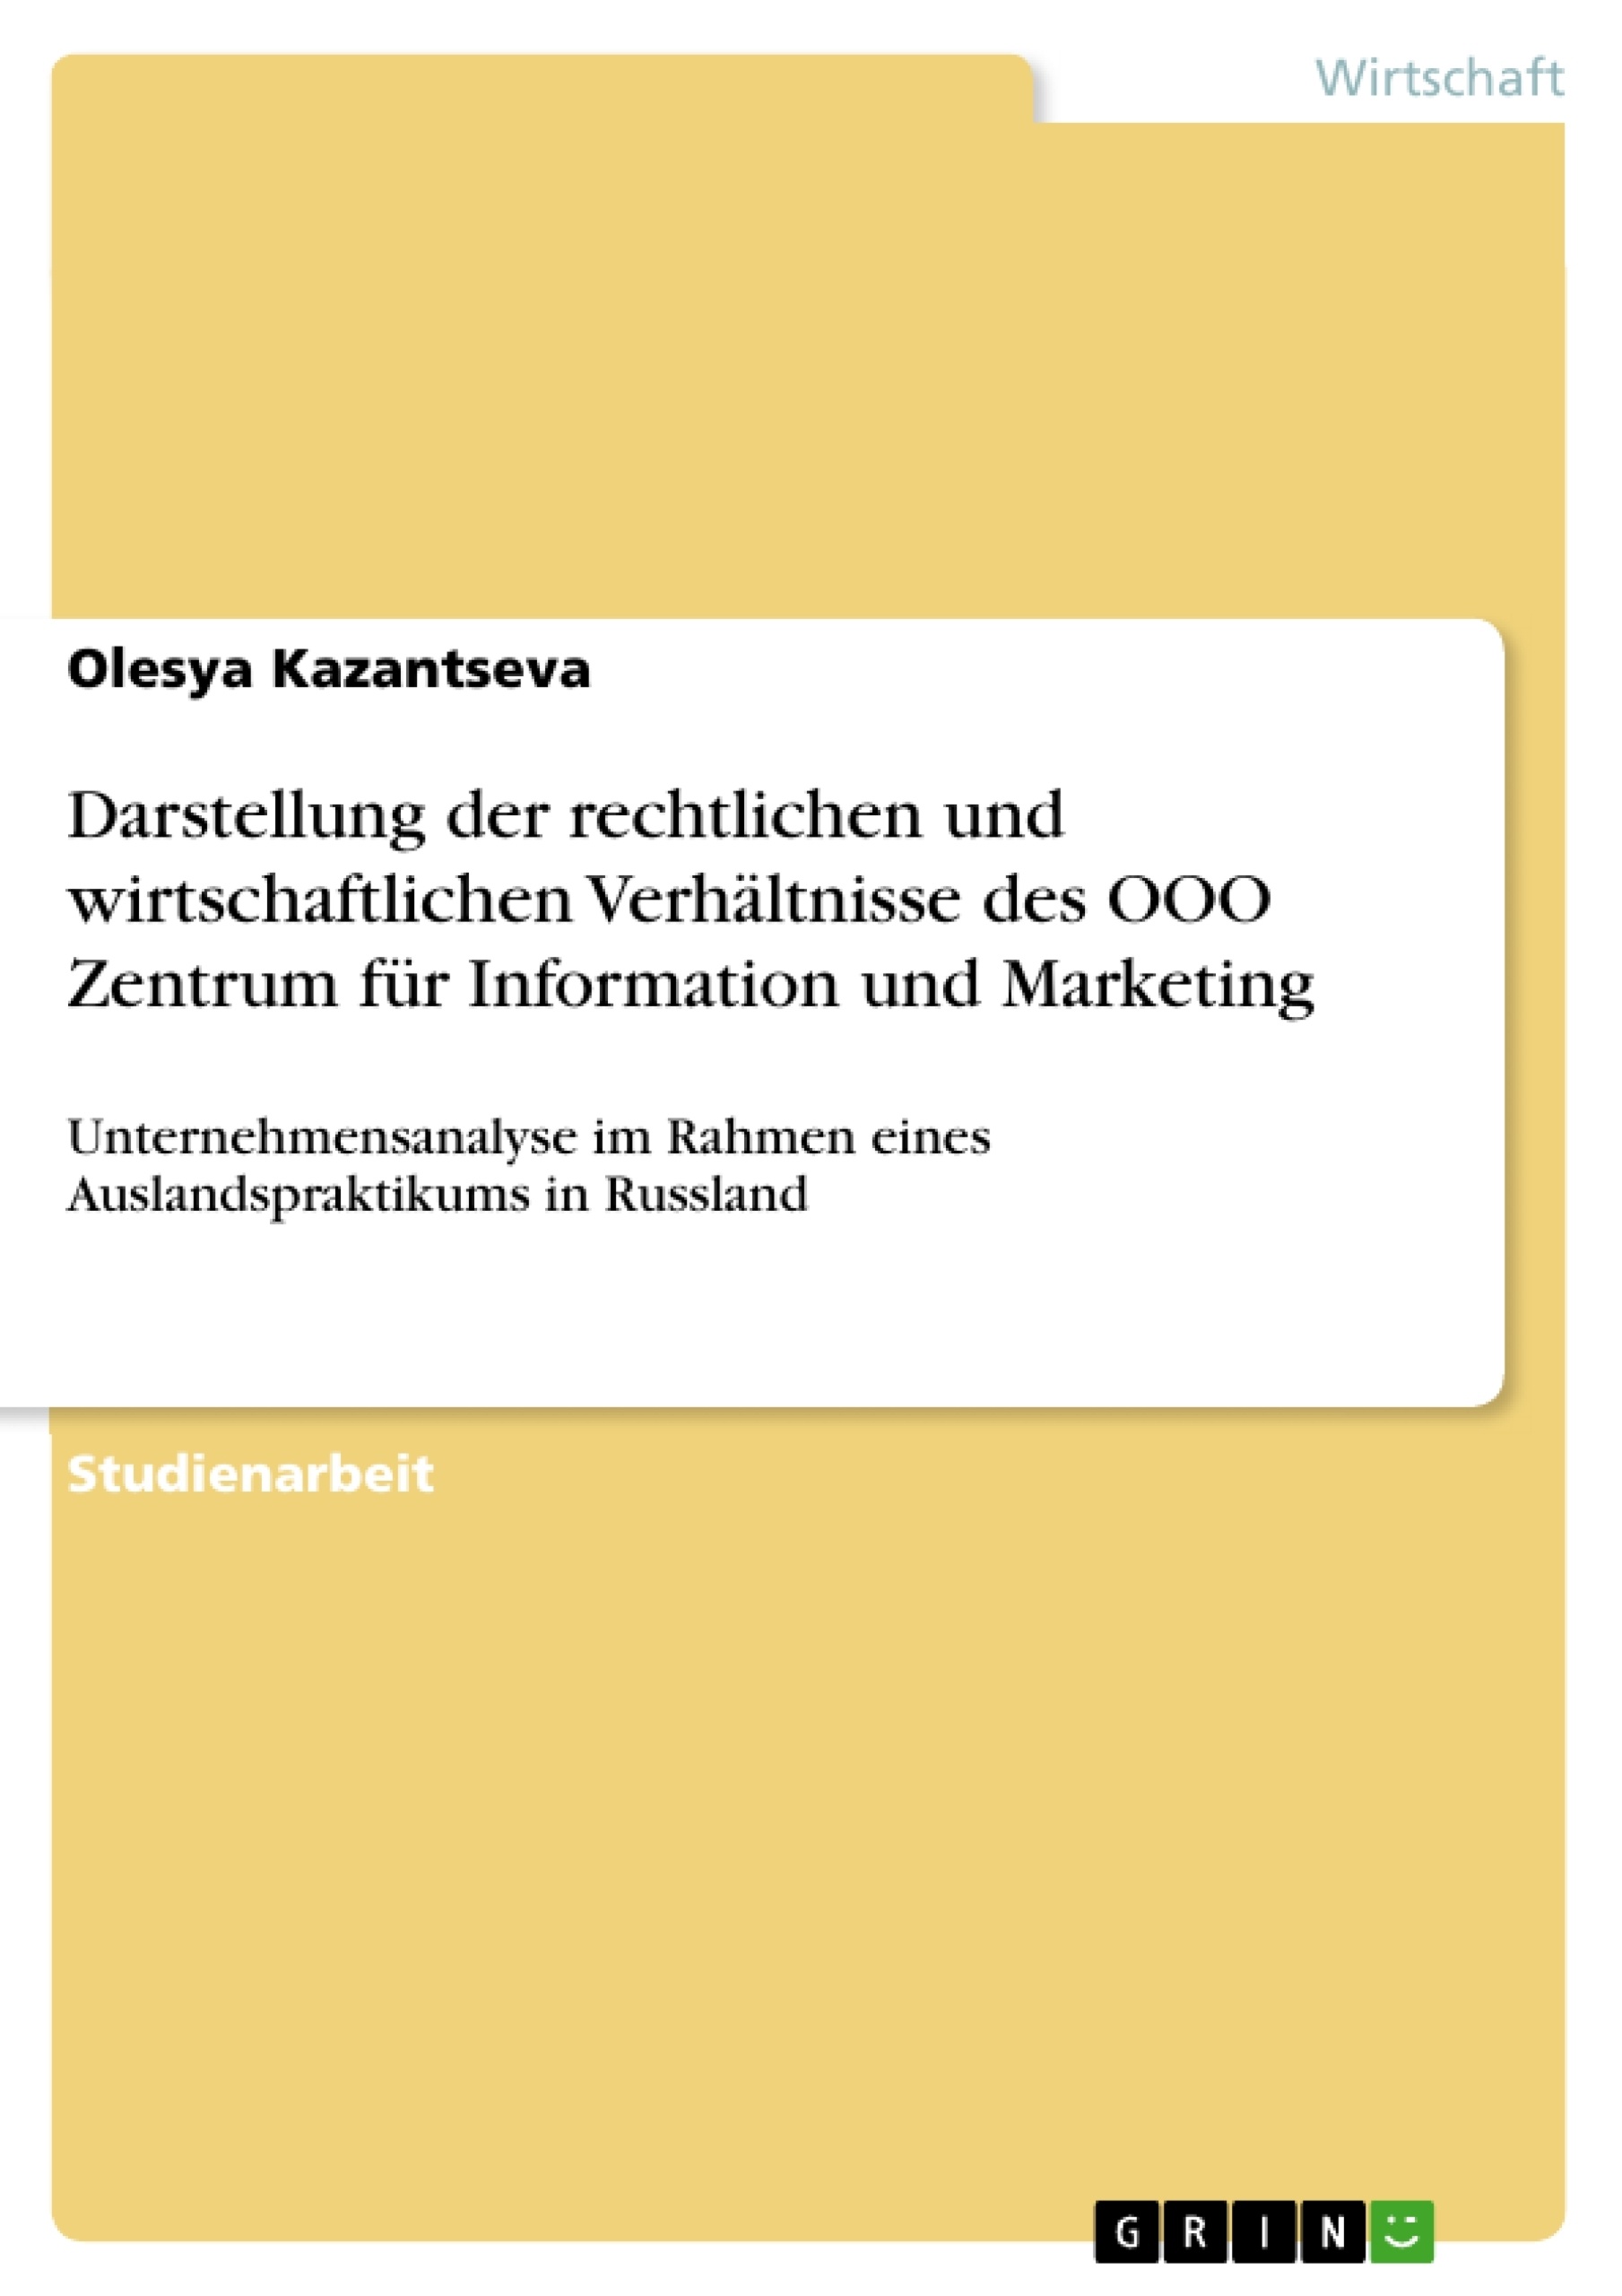 Título: Darstellung der rechtlichen und wirtschaftlichen Verhältnisse des OOO Zentrum für Information und Marketing